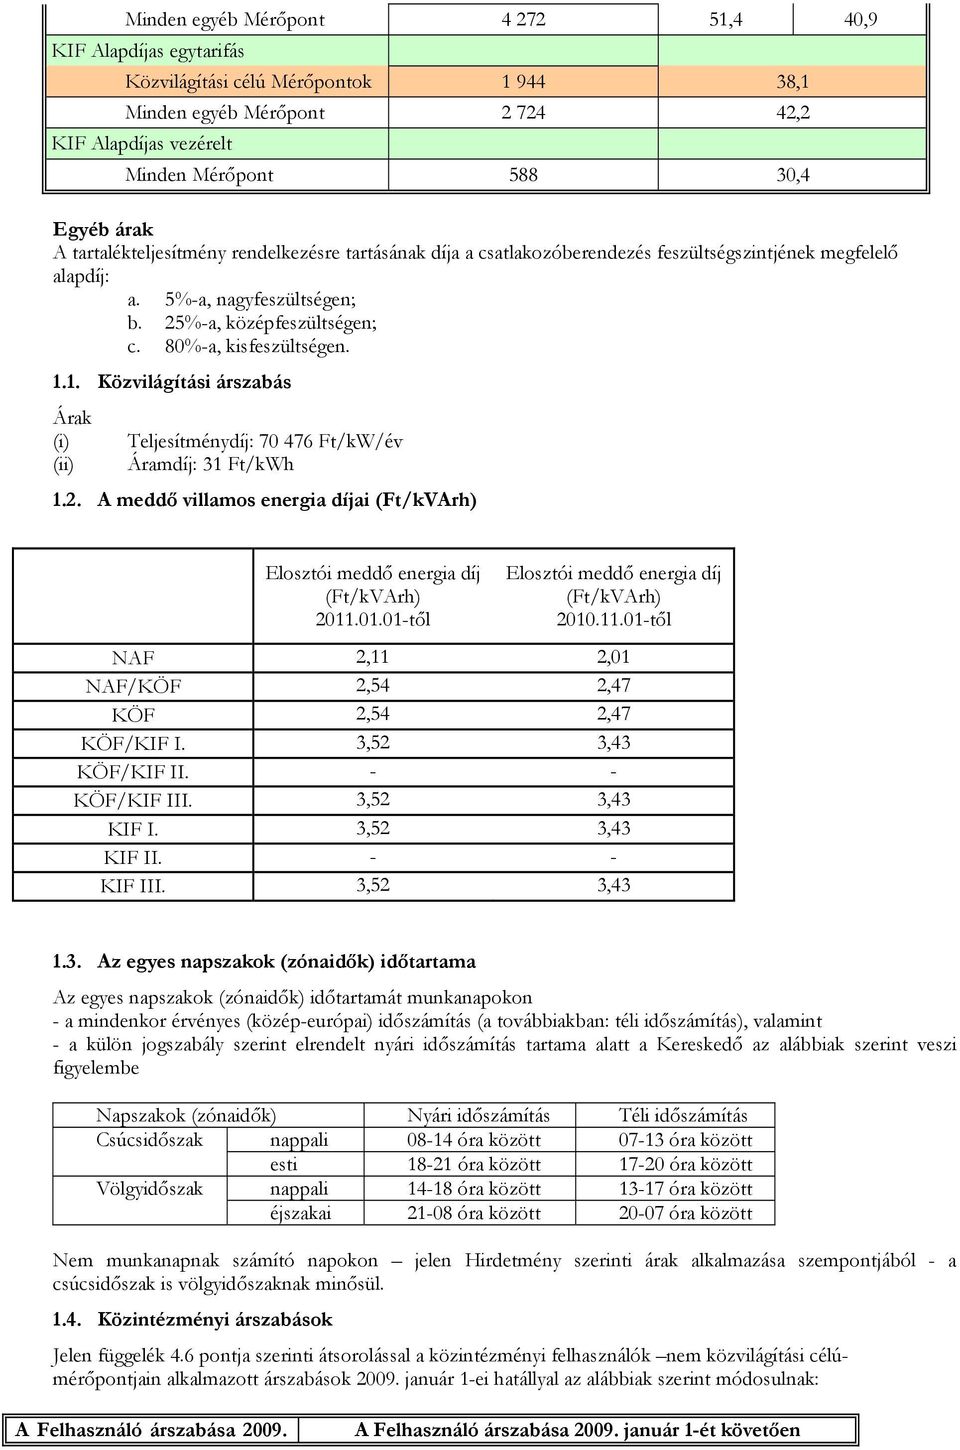 1. Közvilágítási árszabás Árak (i) Teljesítménydíj: 70 476 Ft/kW/év (ii) Áramdíj: 31 Ft/kWh 1.2. A meddő villamos energia díjai (Ft/kVArh) Elosztói meddő energia díj (Ft/kVArh) 2011